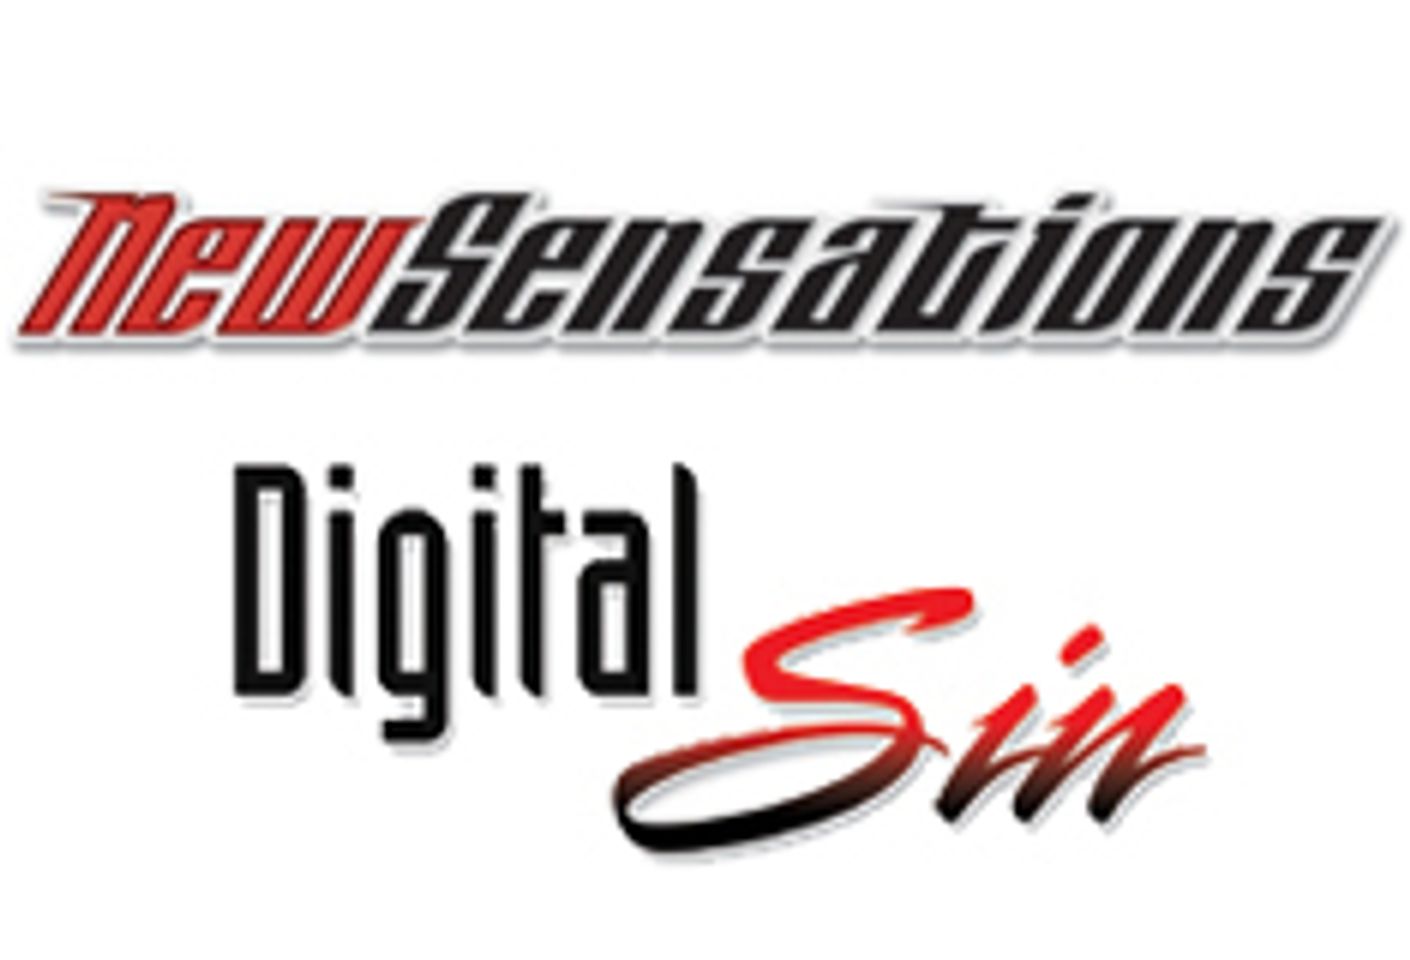 New Sensations/Digital Sin Receive 7 XRCO Noms